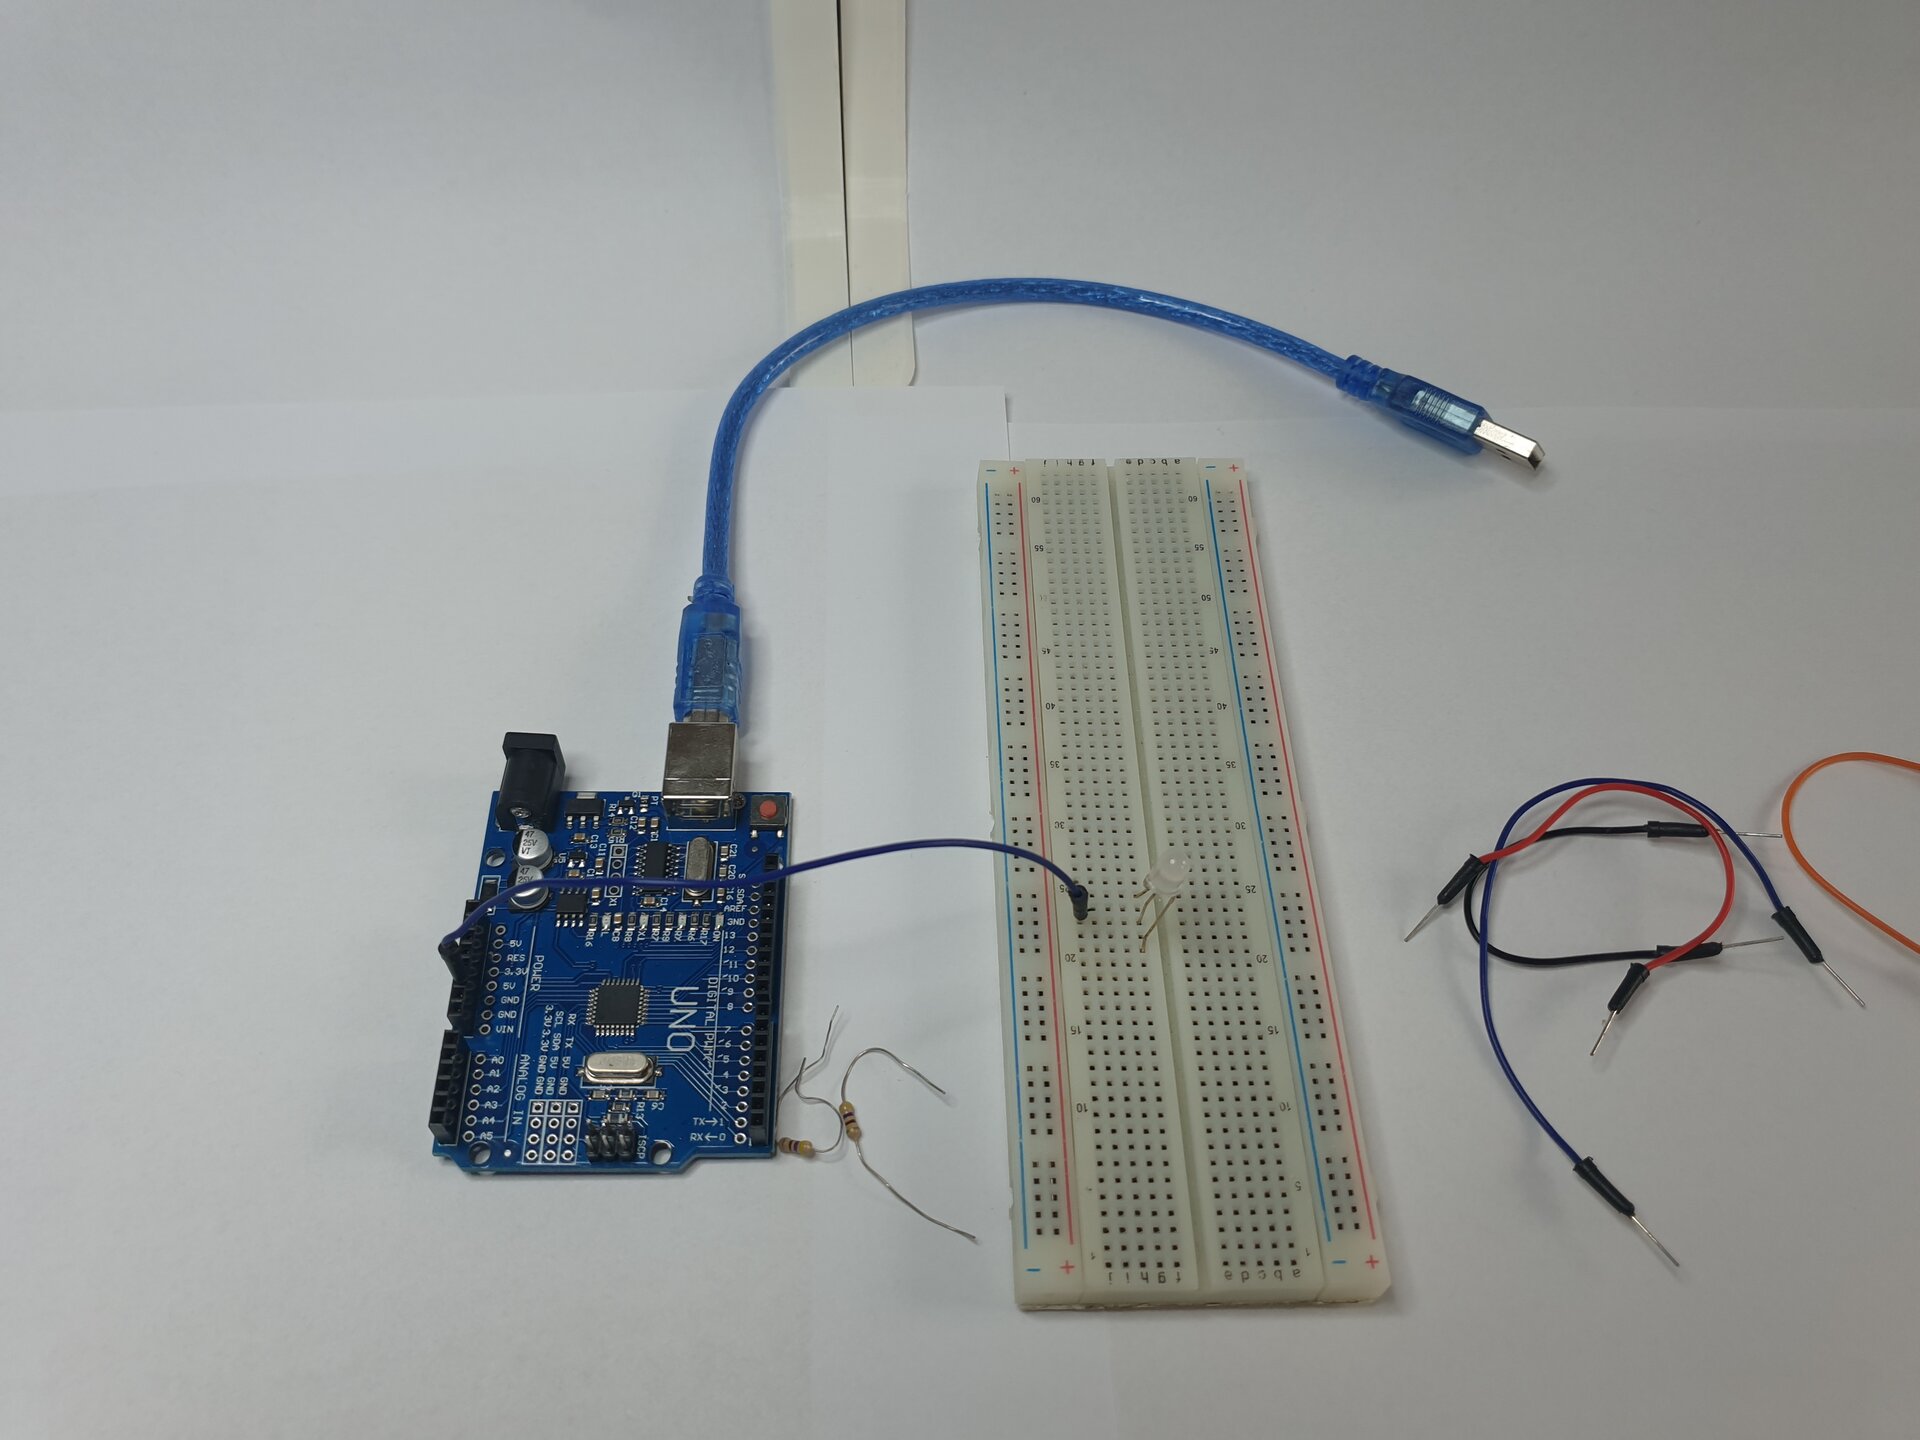 Zdjęcie przedstawia moduł Arduino z podłączonym do niego kablem USB, dwa rezystory, płytkę stykową, w którą wpięto diodę oraz leżące obok płytki przewody. Połączono moduł z płytką za pomocą przewodu wpiętego w module w 5 V i w płytce w tym samym wierszu, co środkowa nóżka diody.